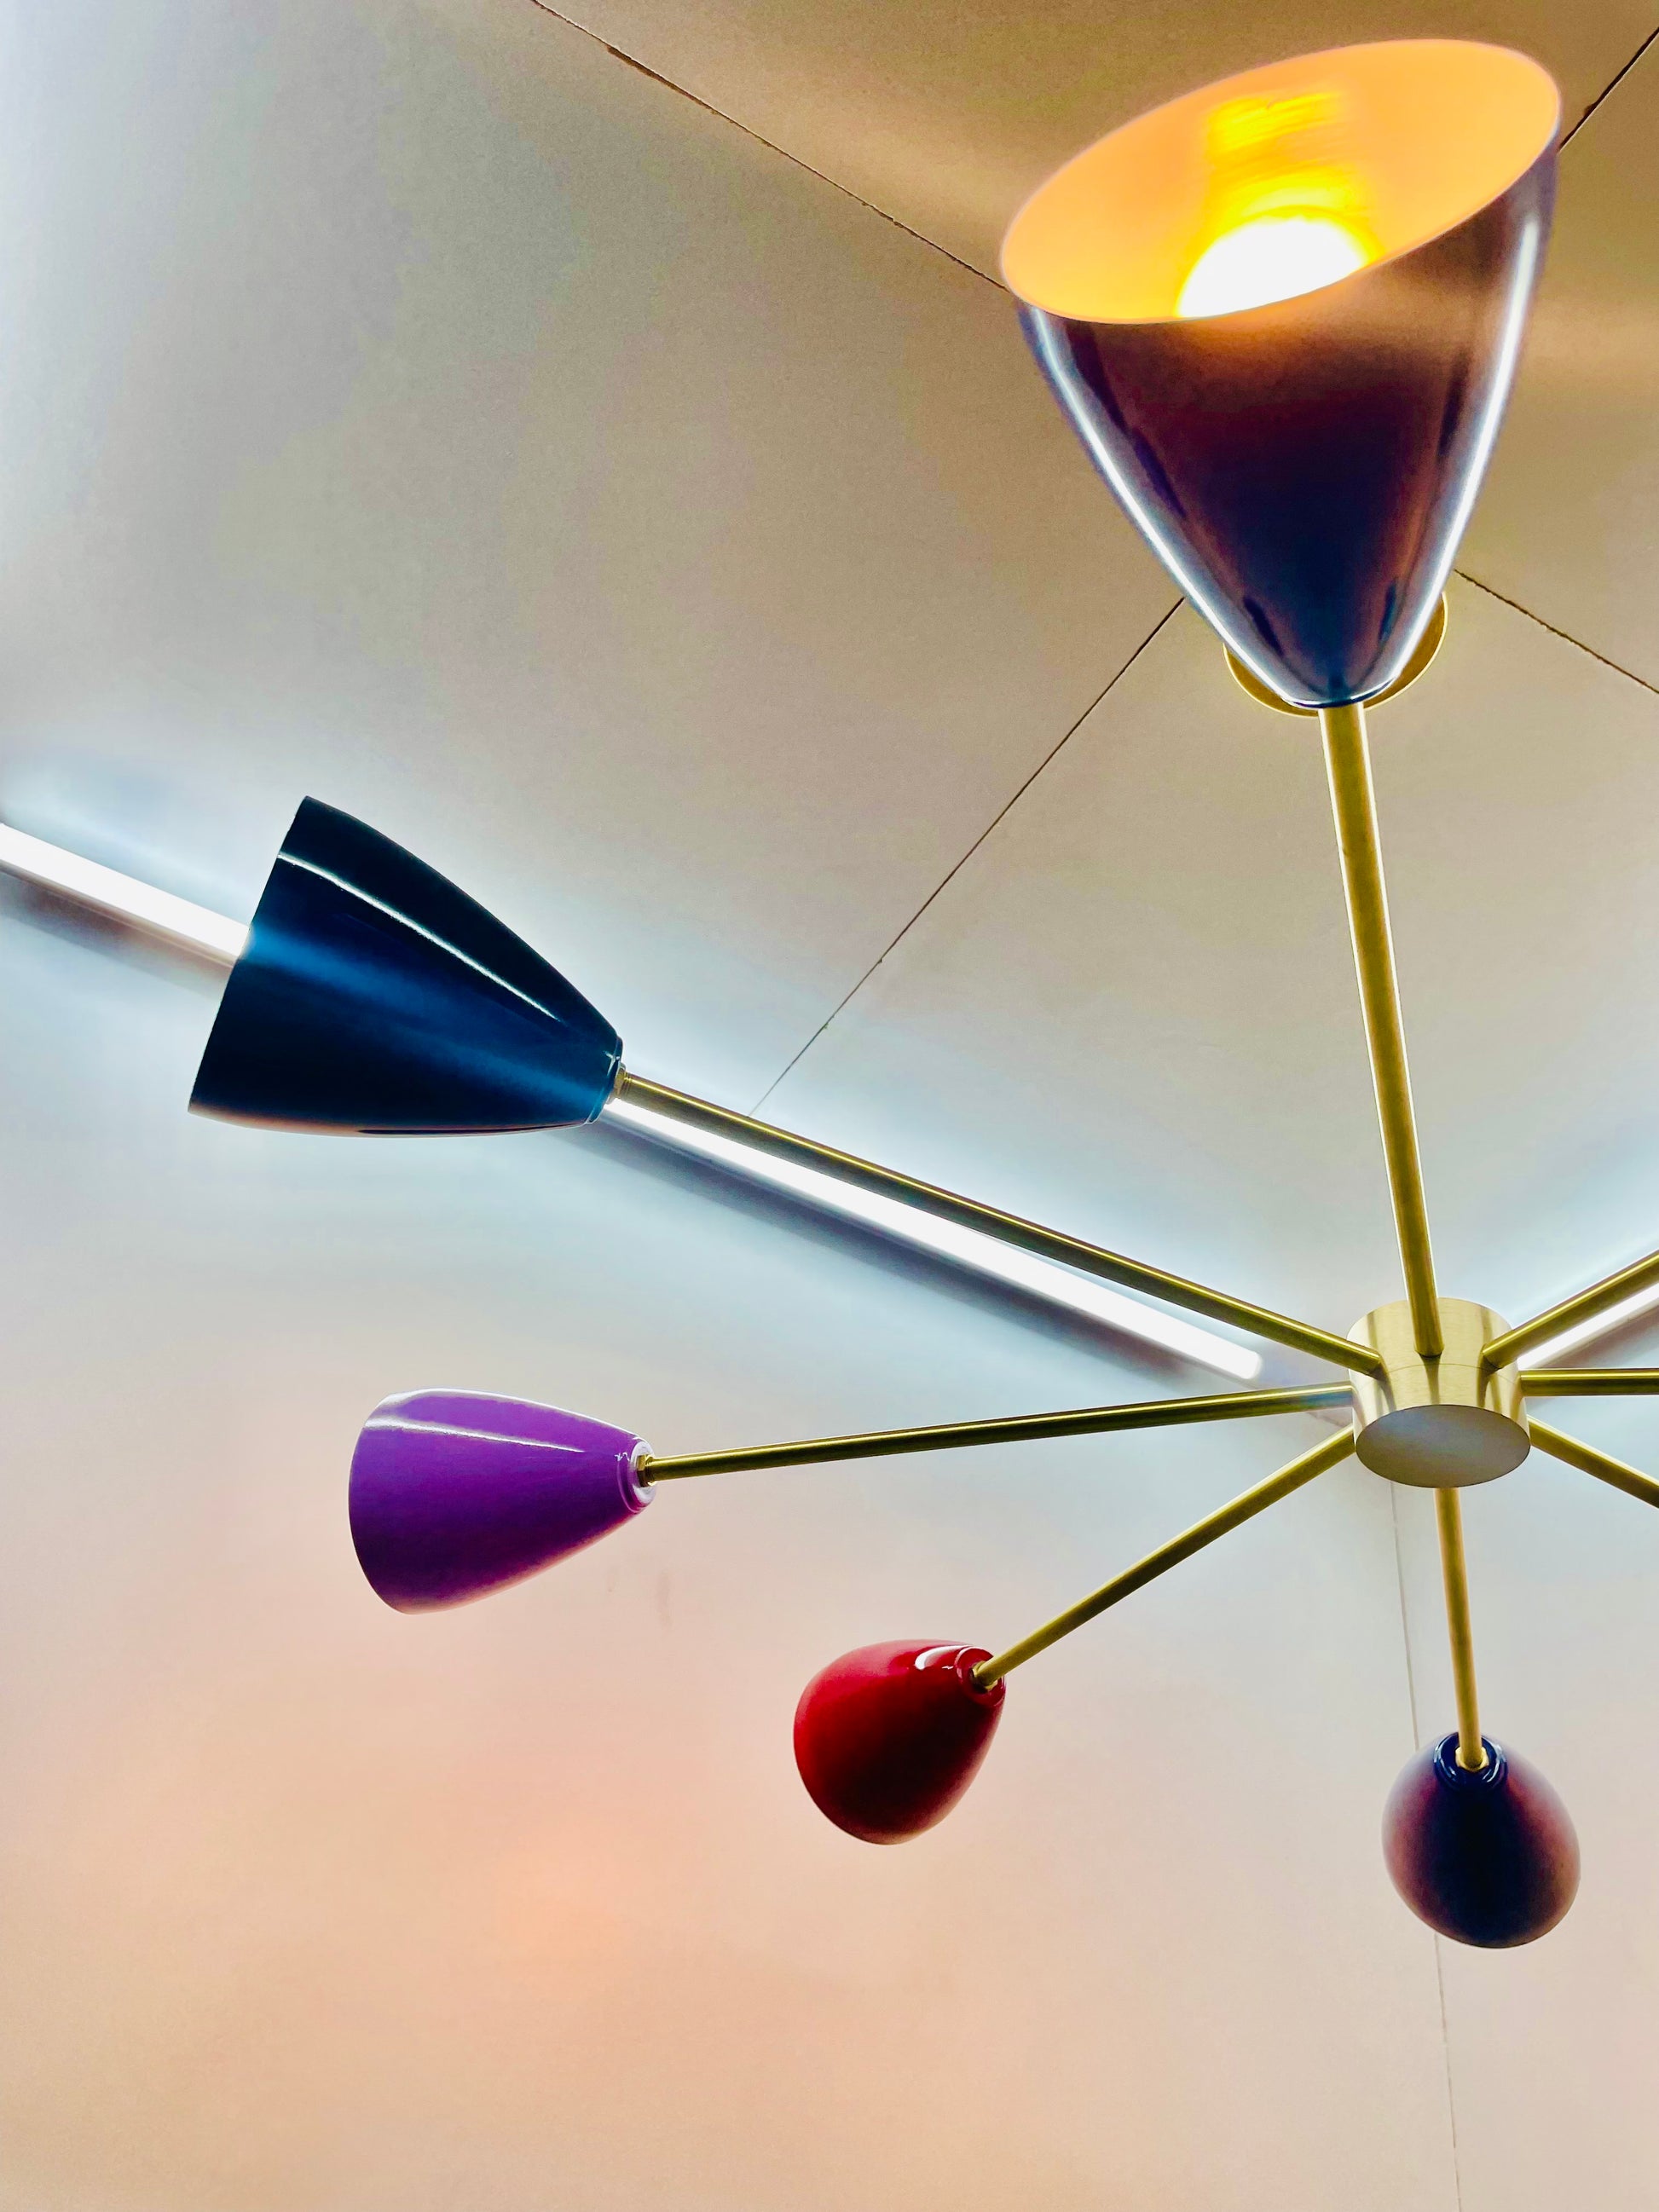 8 Lights Multicolor Brass Sputnik Flush Mount Mid Century Modern Chandelier - Global Lights Hub